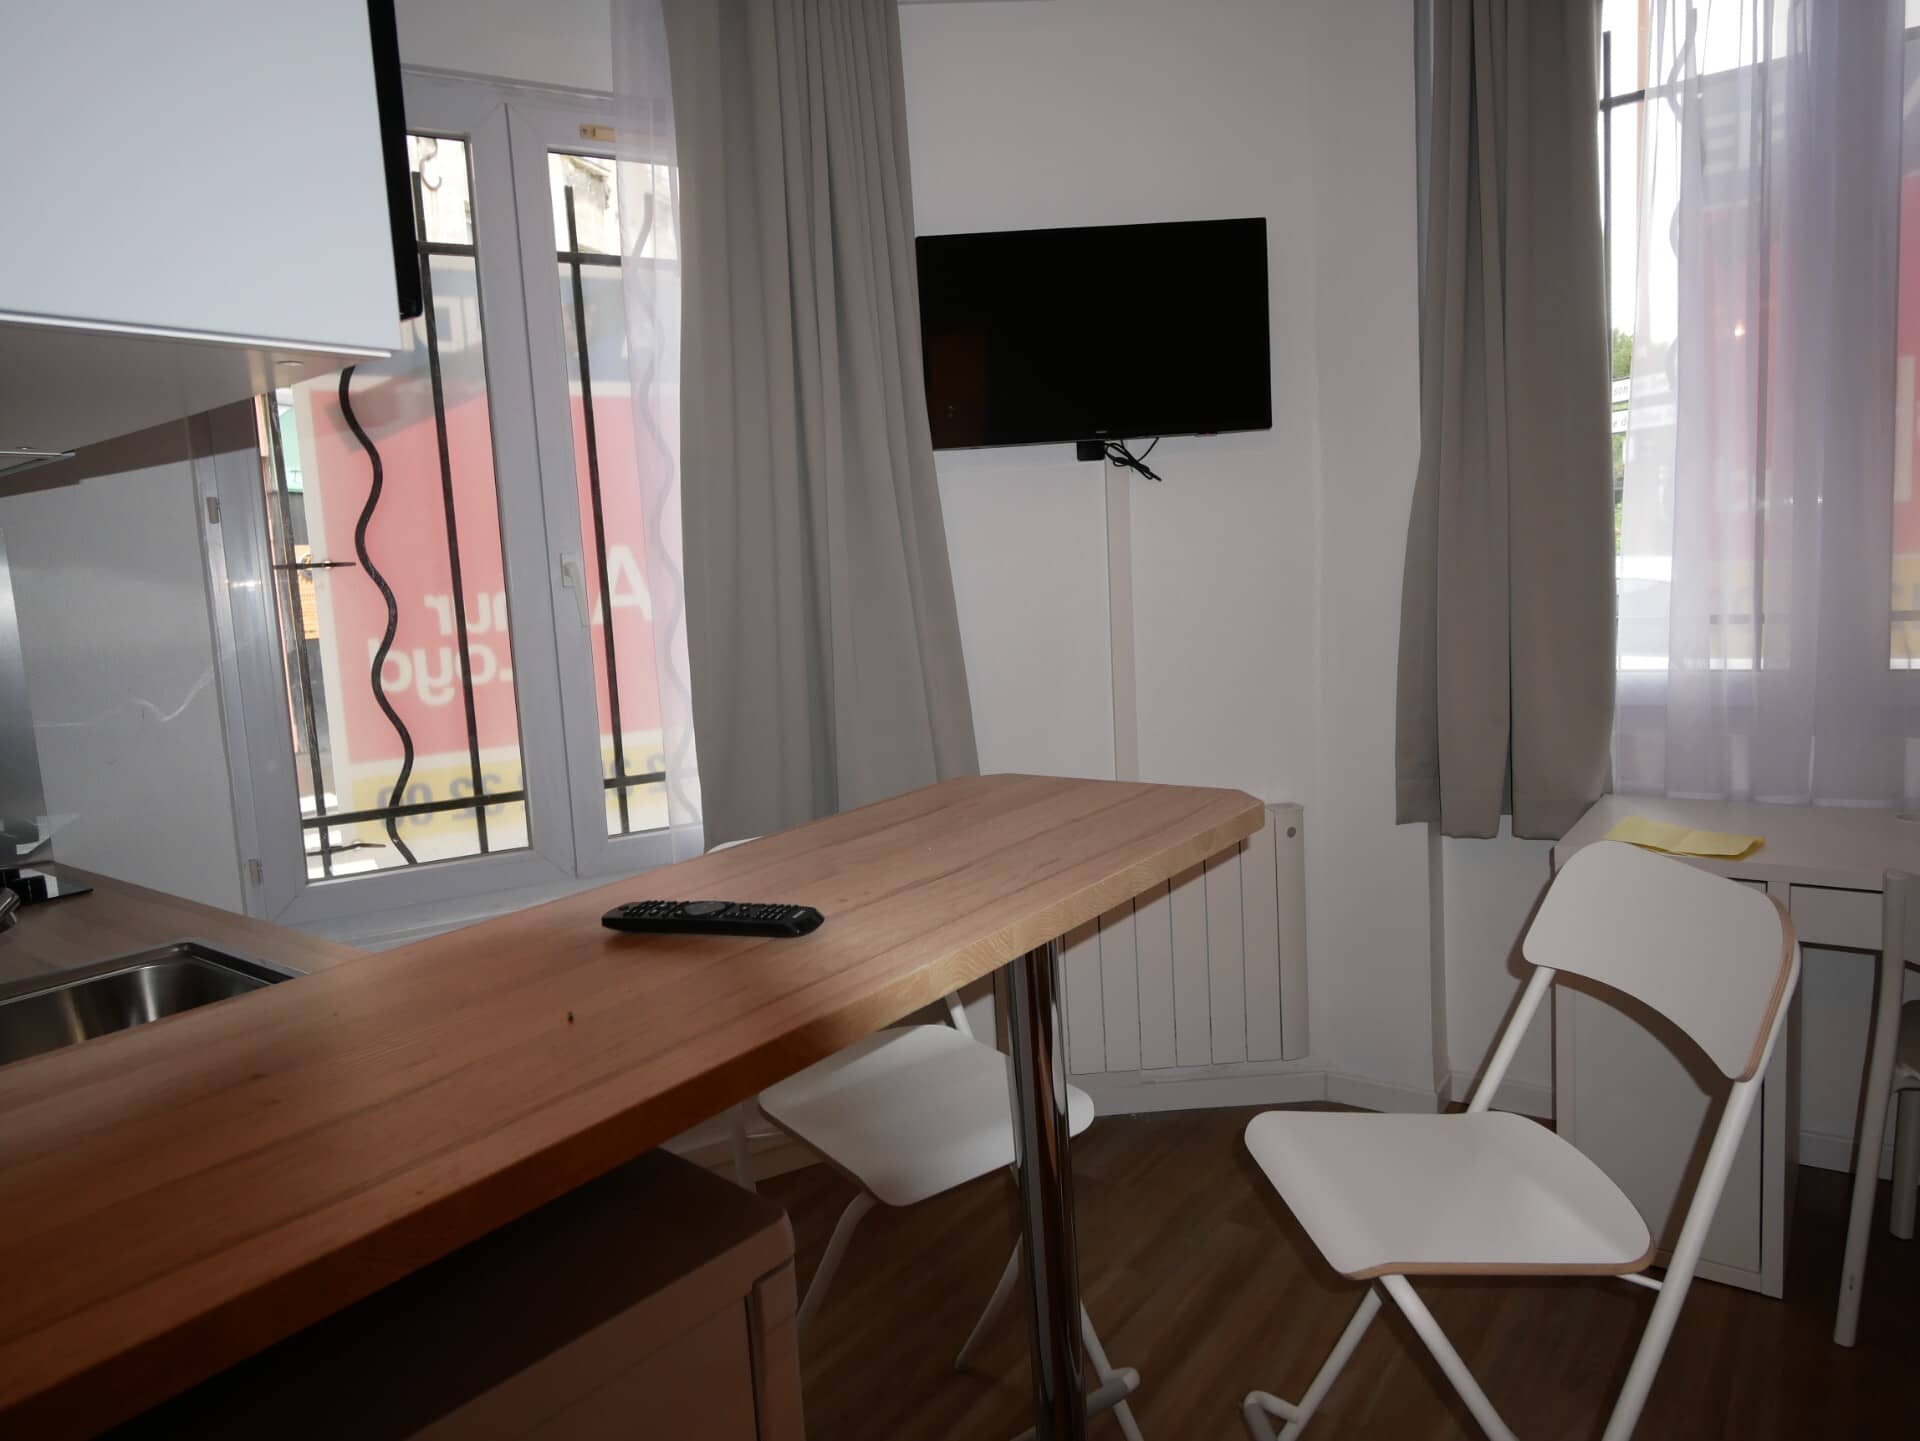 Annonce immobilière en location Appartement type F1 Le Havre M09